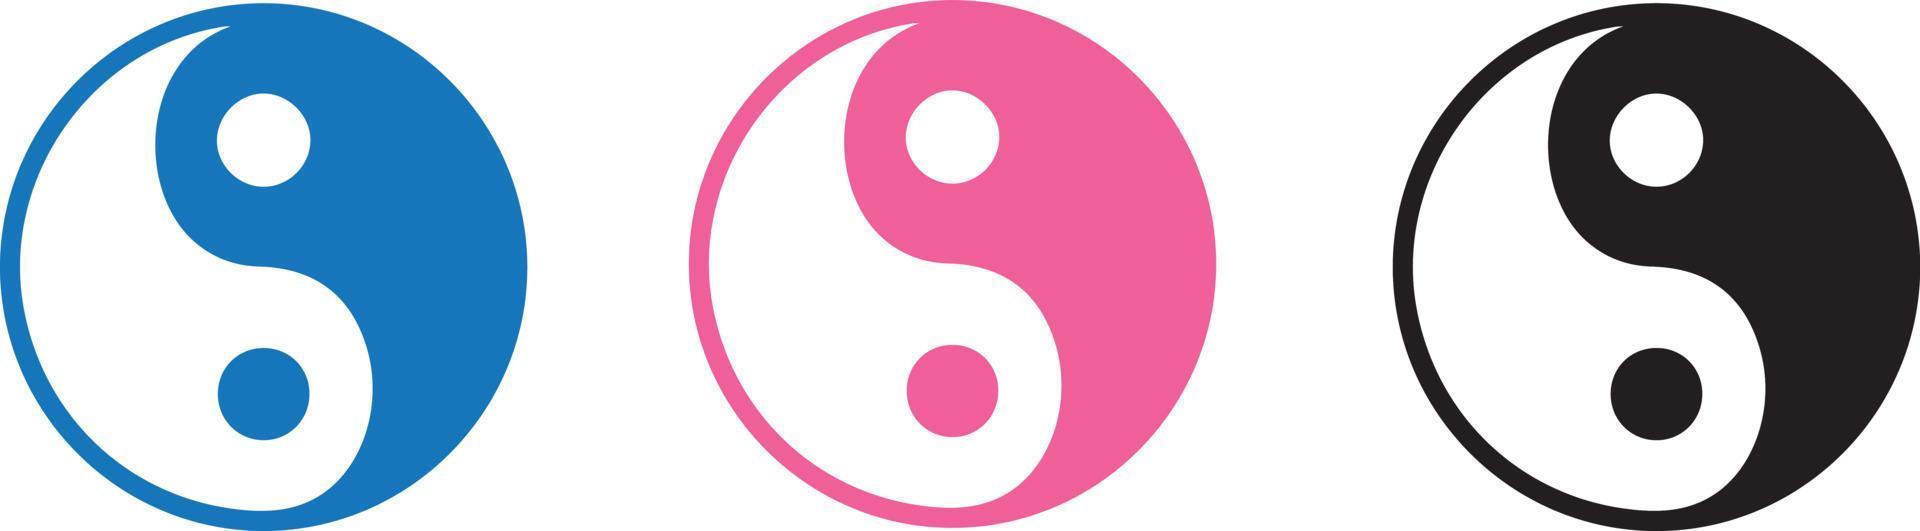 vettore di lilustration yin yang in bianco e nero, blu e rosa